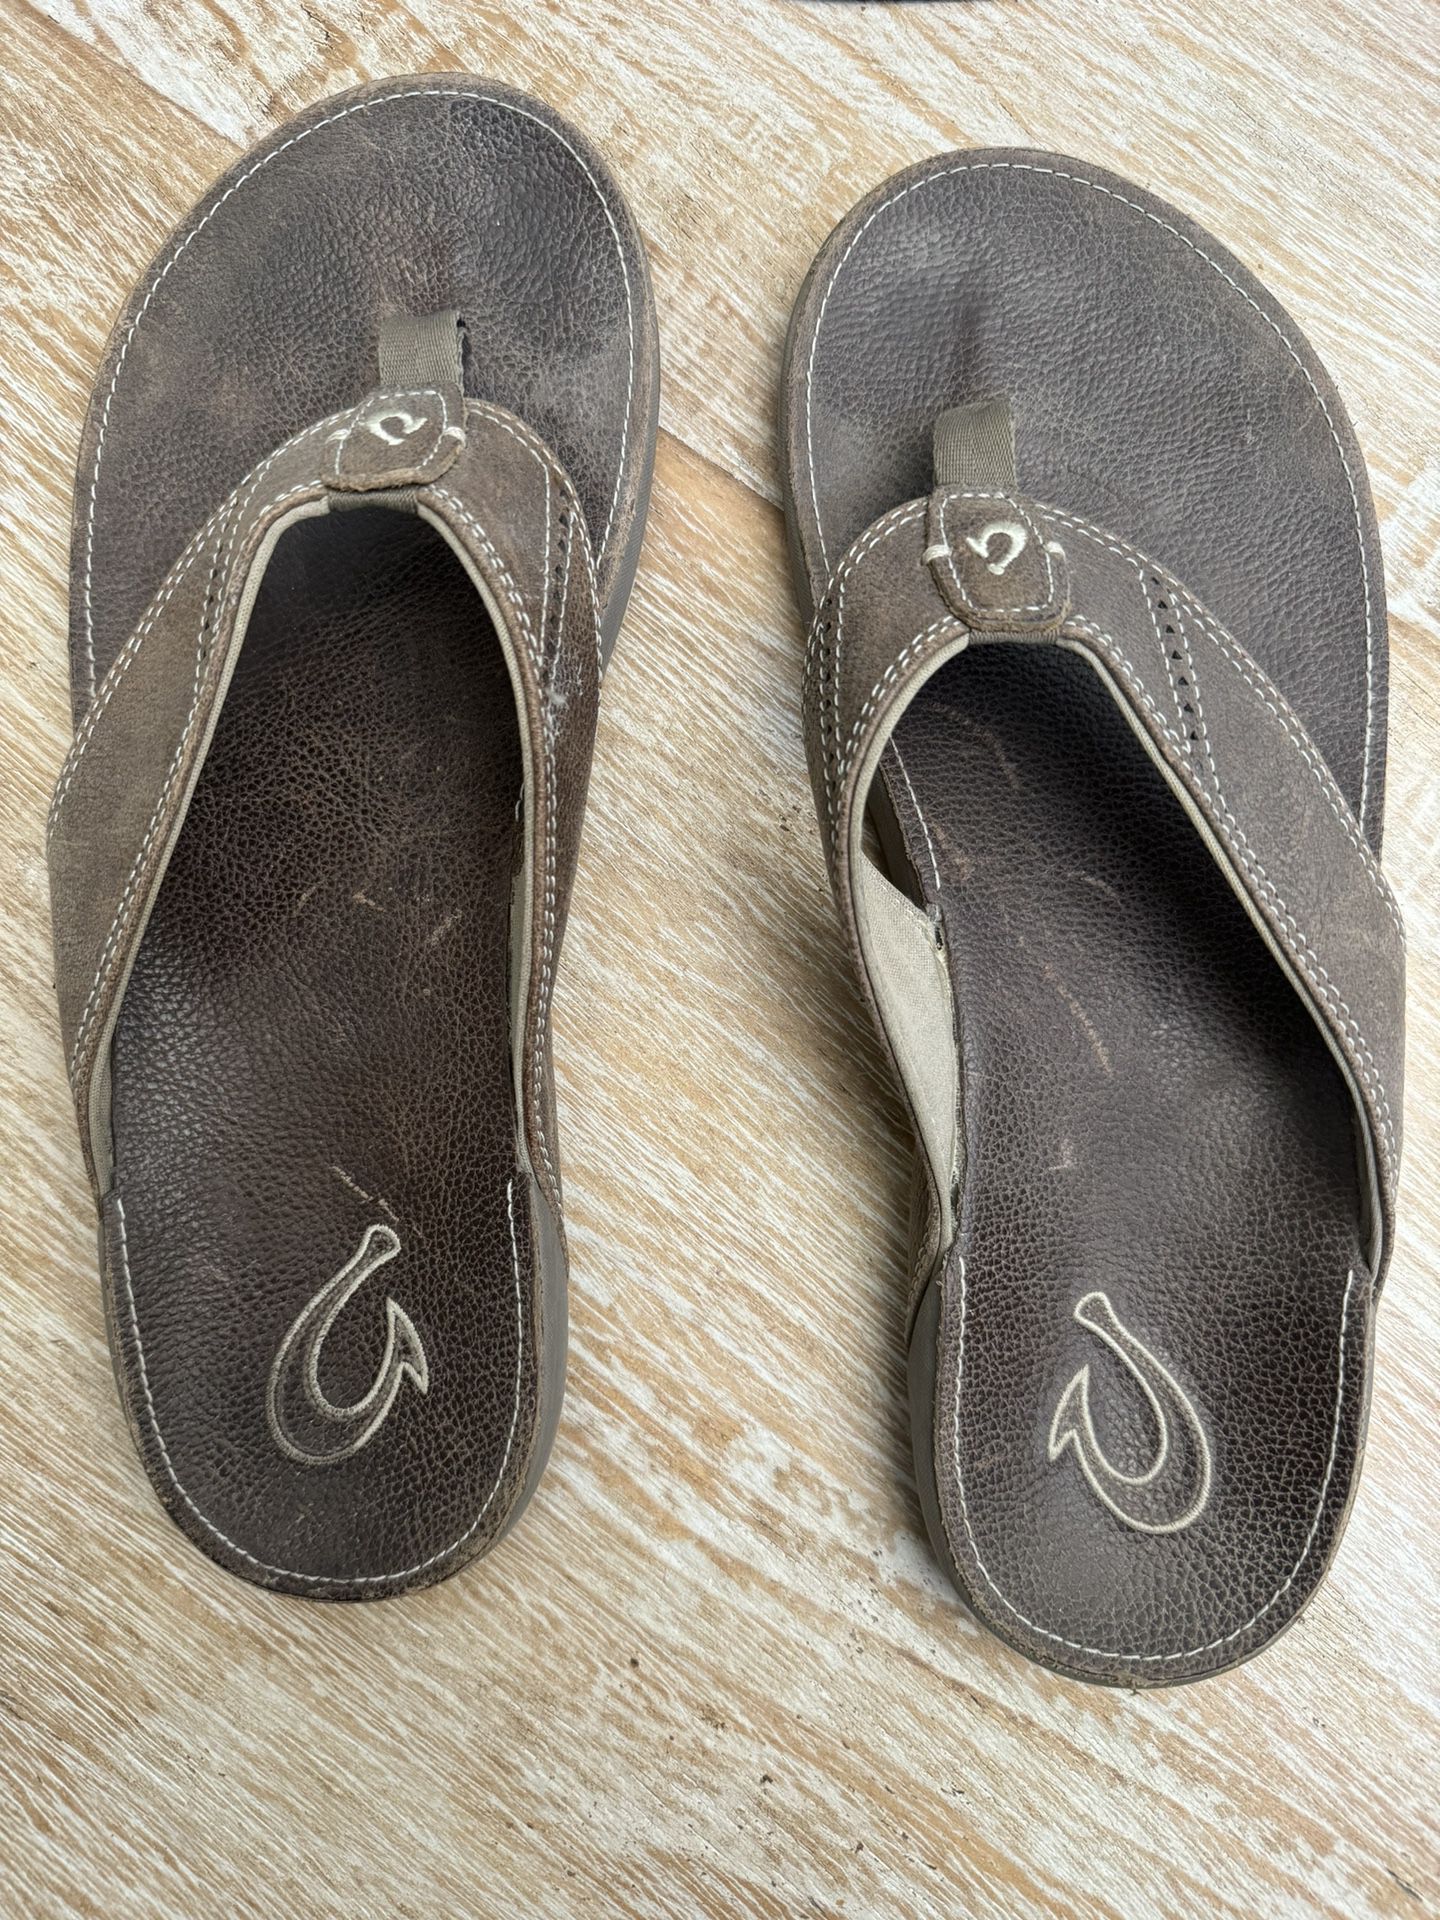 Men’s Olukai Leather Flip-flops